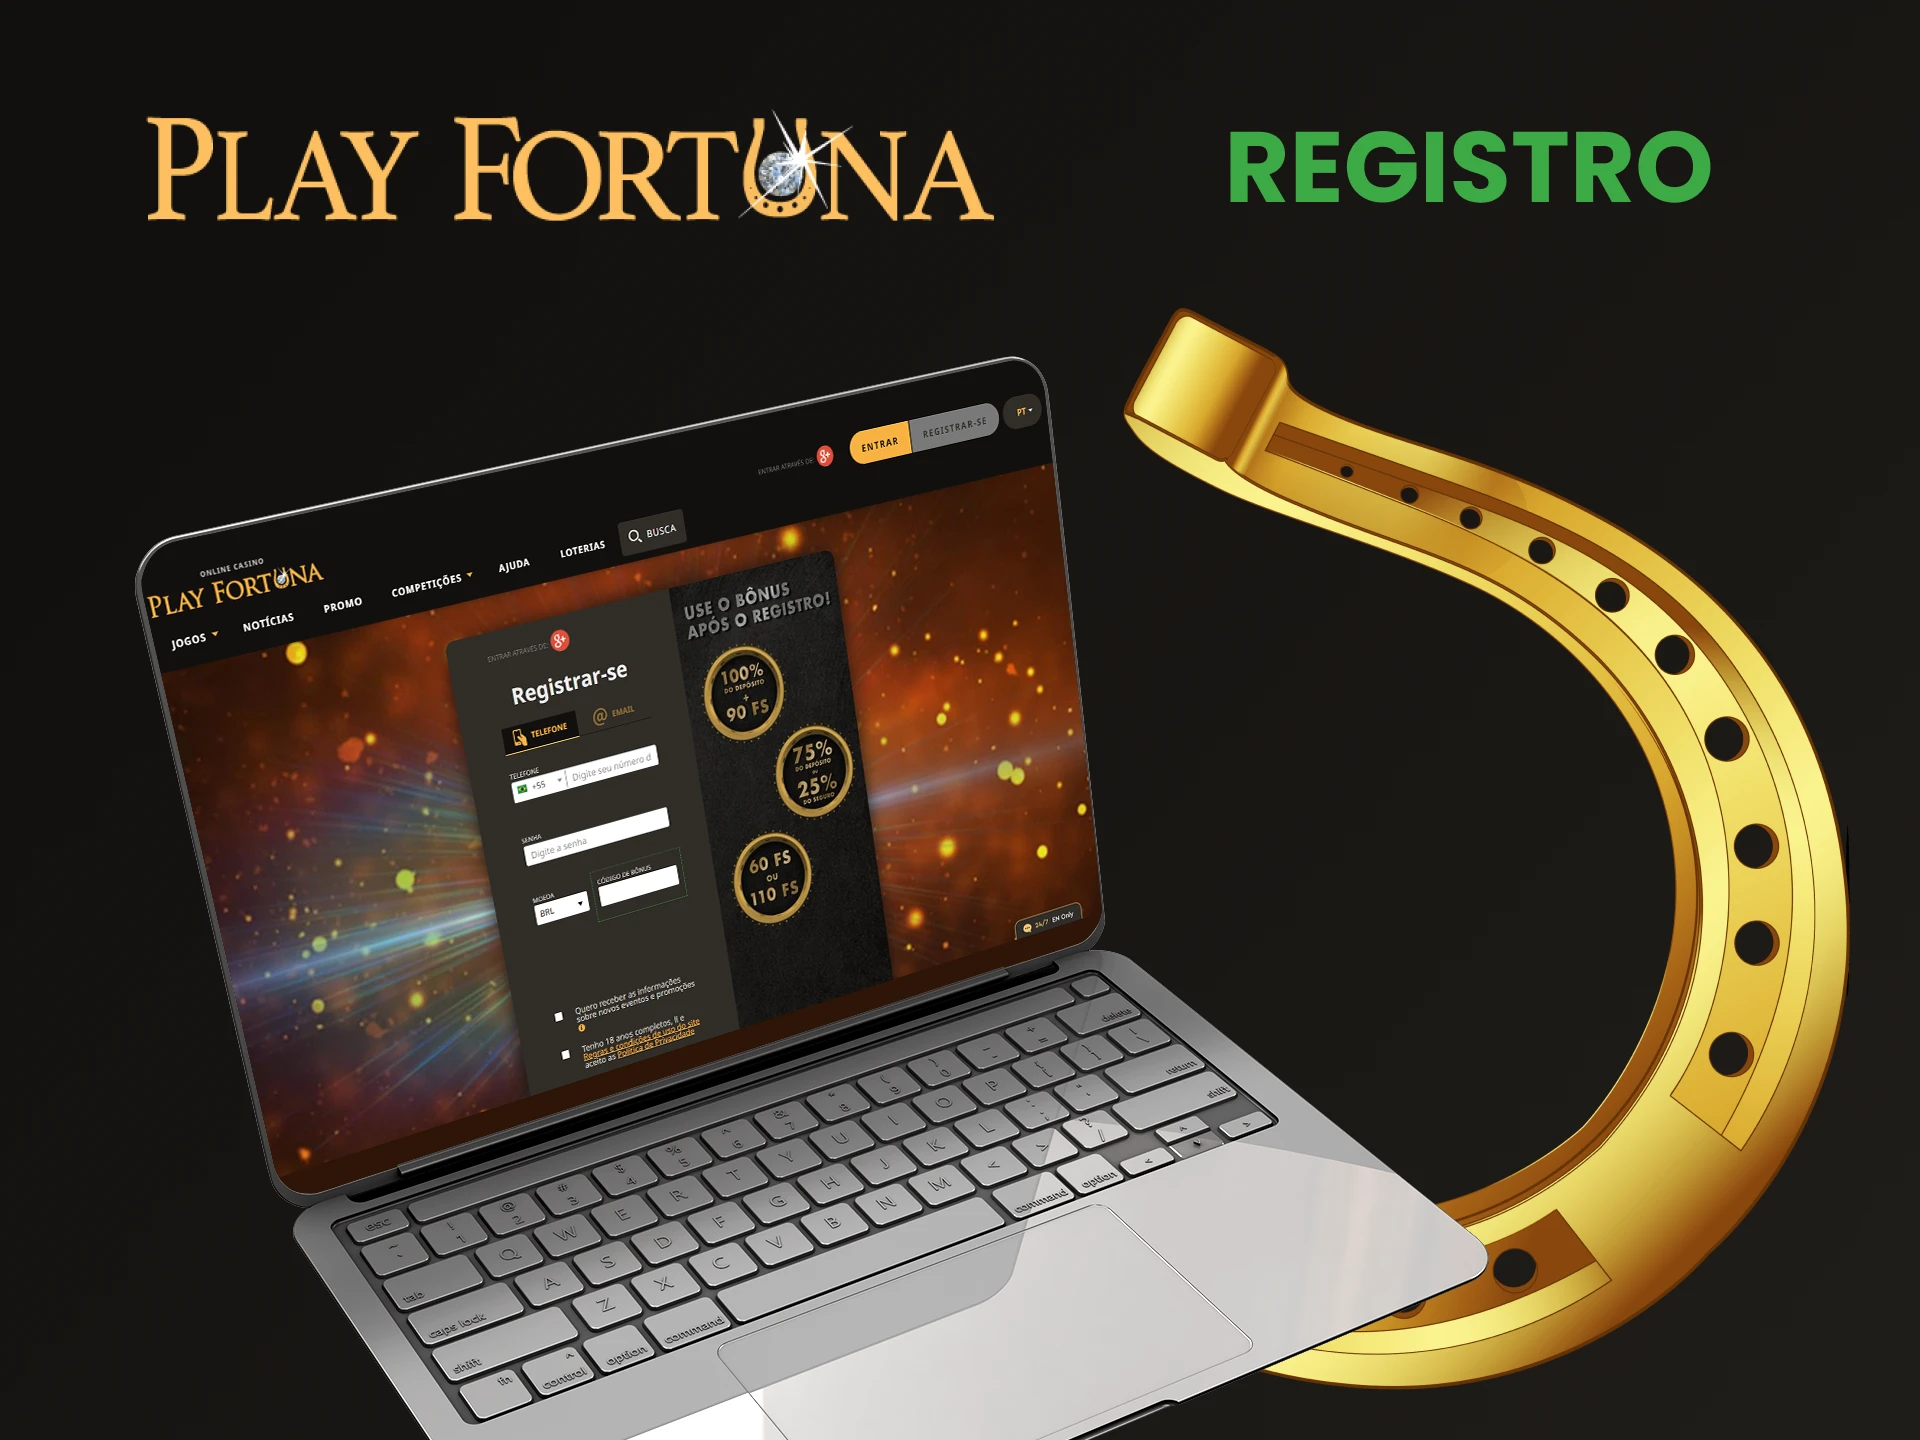 Crie uma conta pessoal no Play Fortuna.